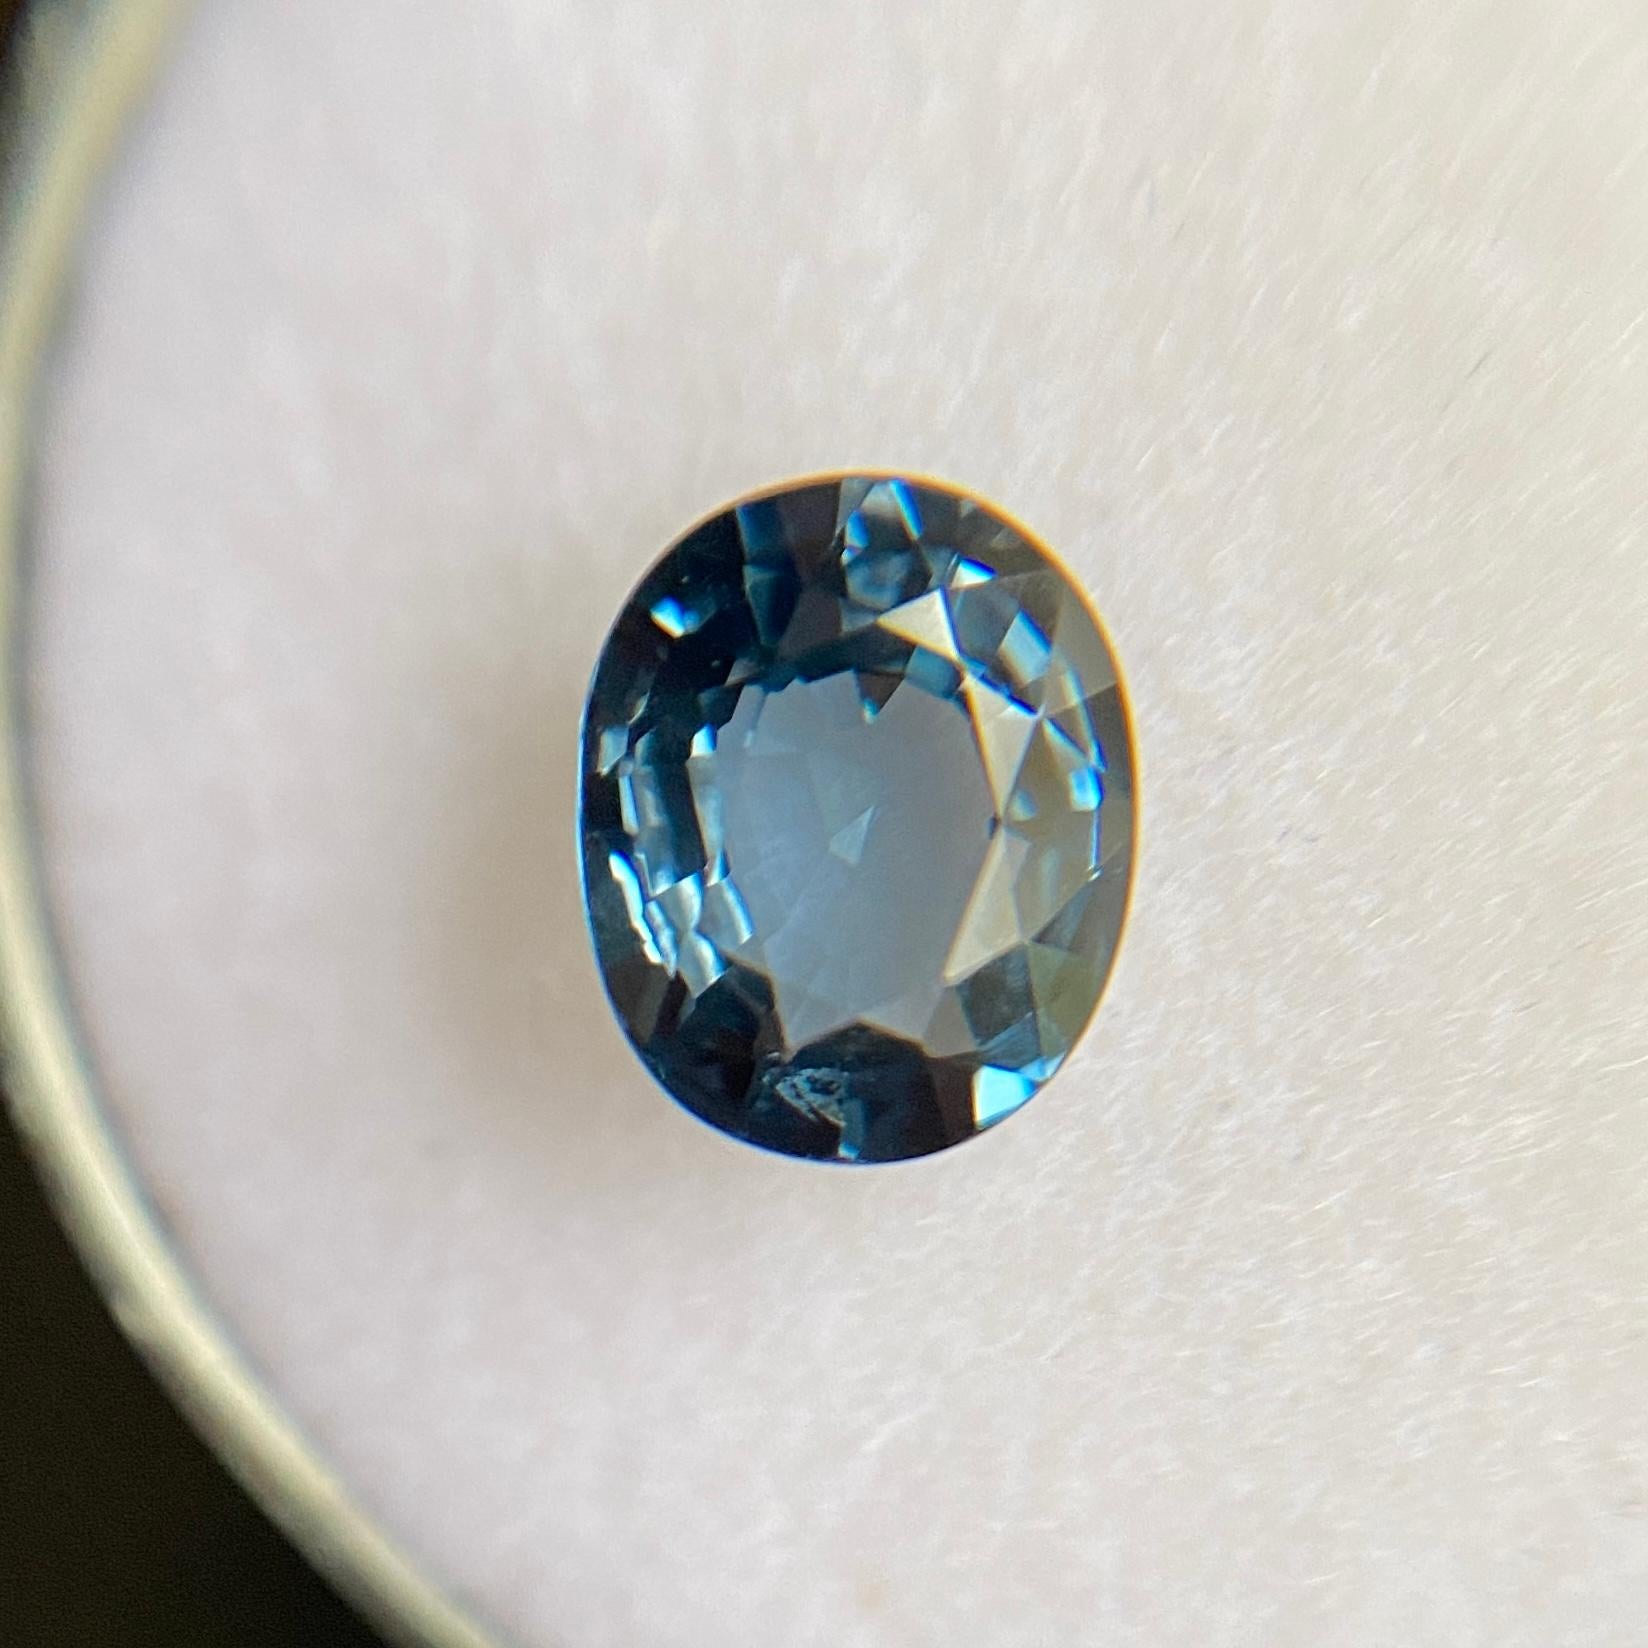 rare blue gem